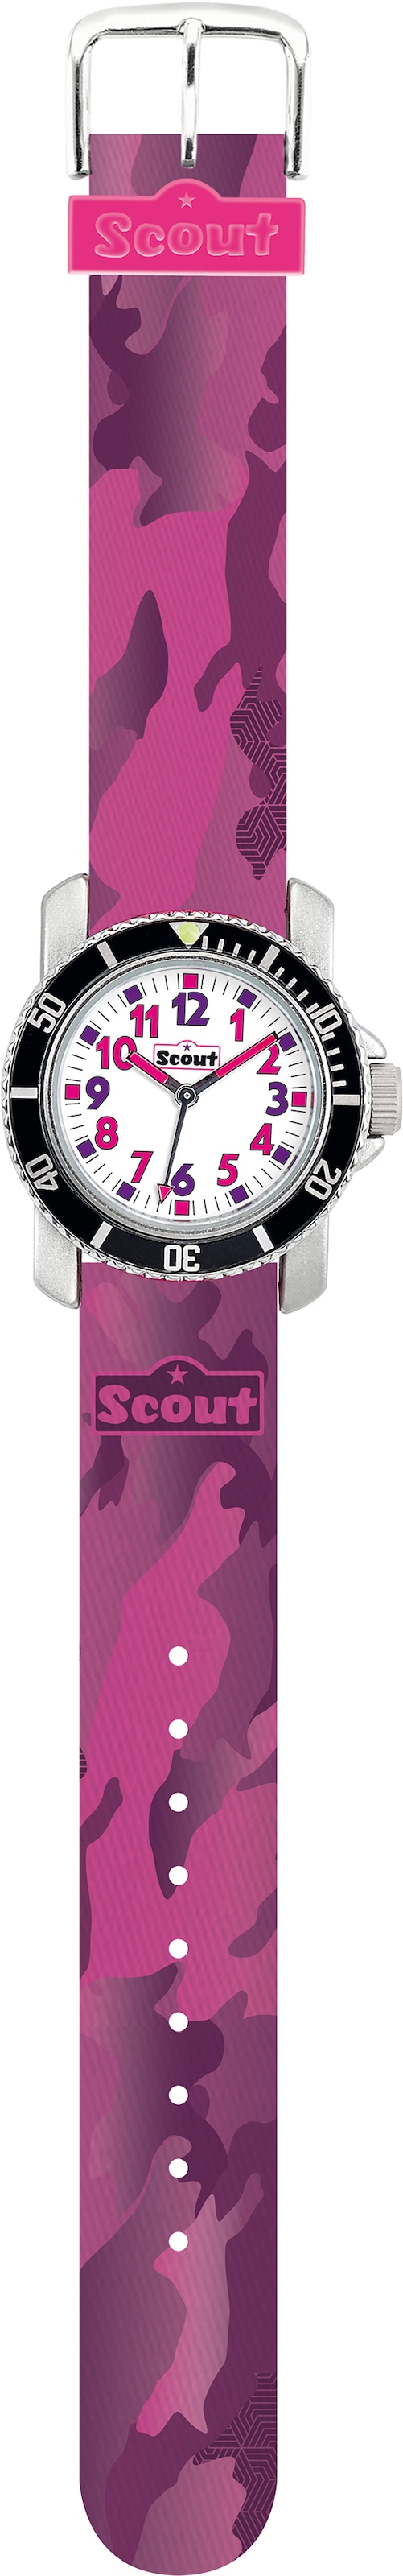 Quarzuhr ideal I\'m | Scout als 280377004«, Geschenk kaufen auch »Diver, walking